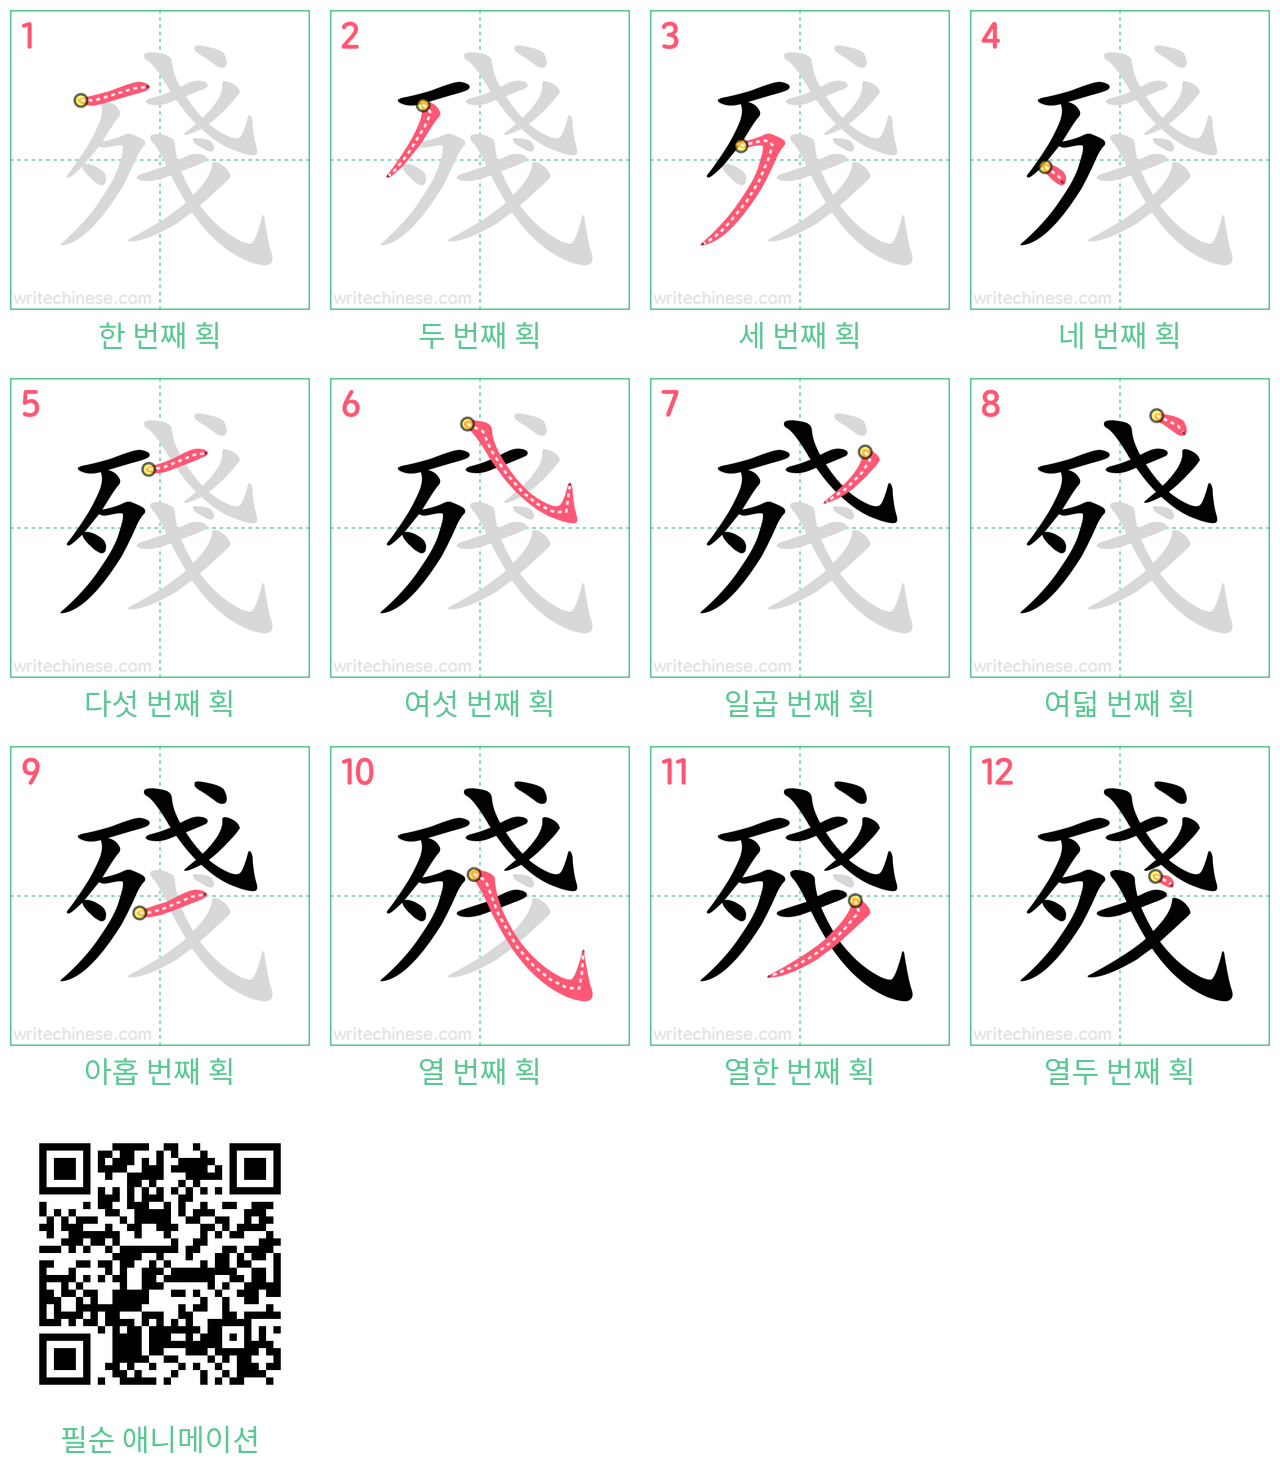 殘 step-by-step stroke order diagrams